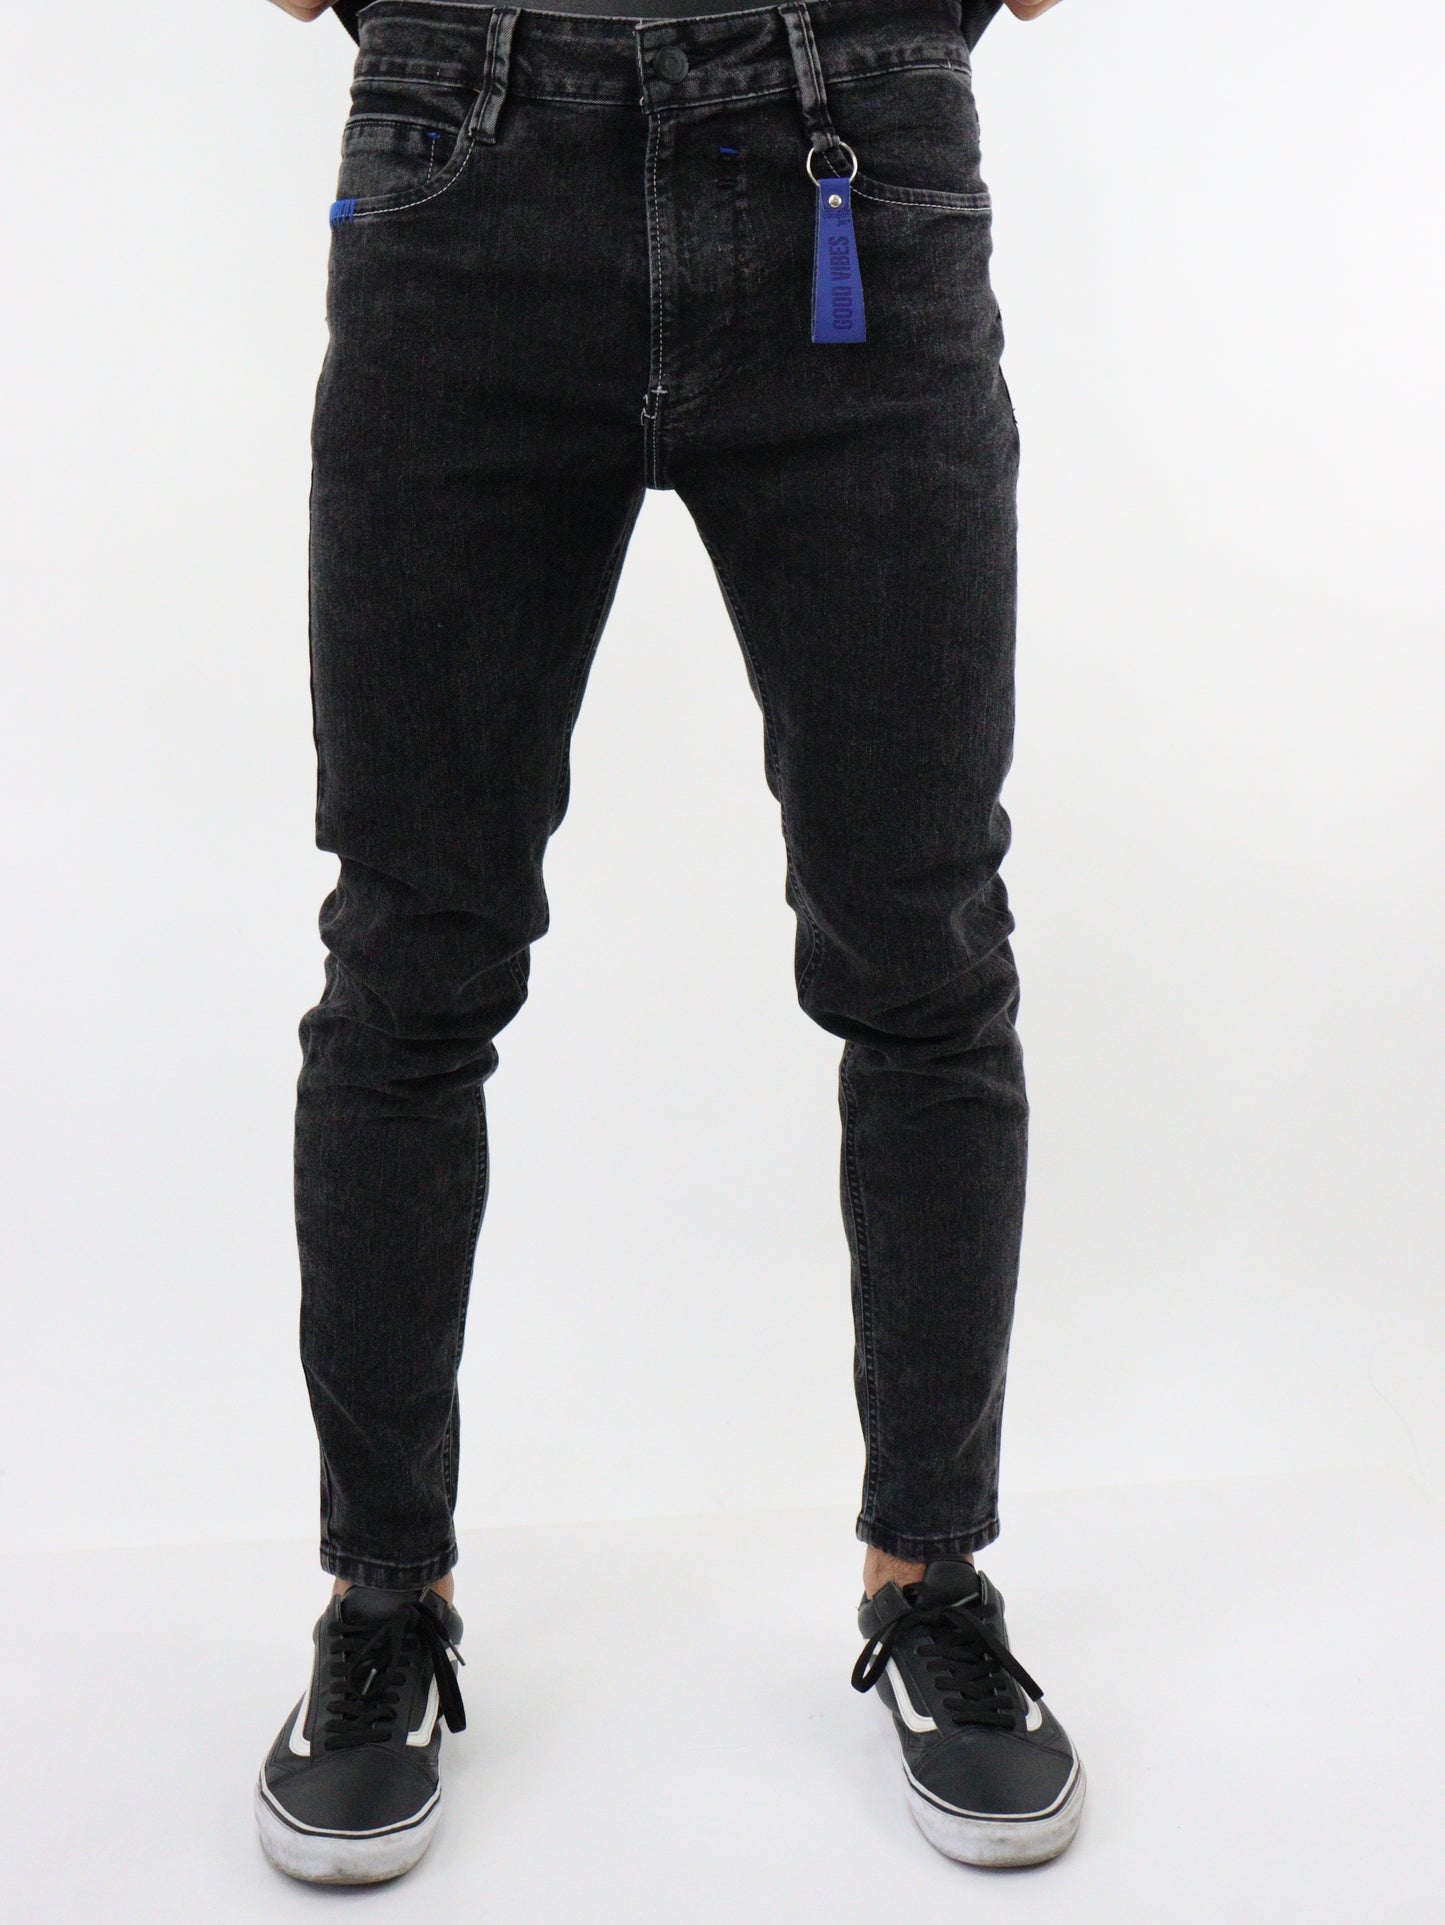 Jeans skinny de color negro deslavado